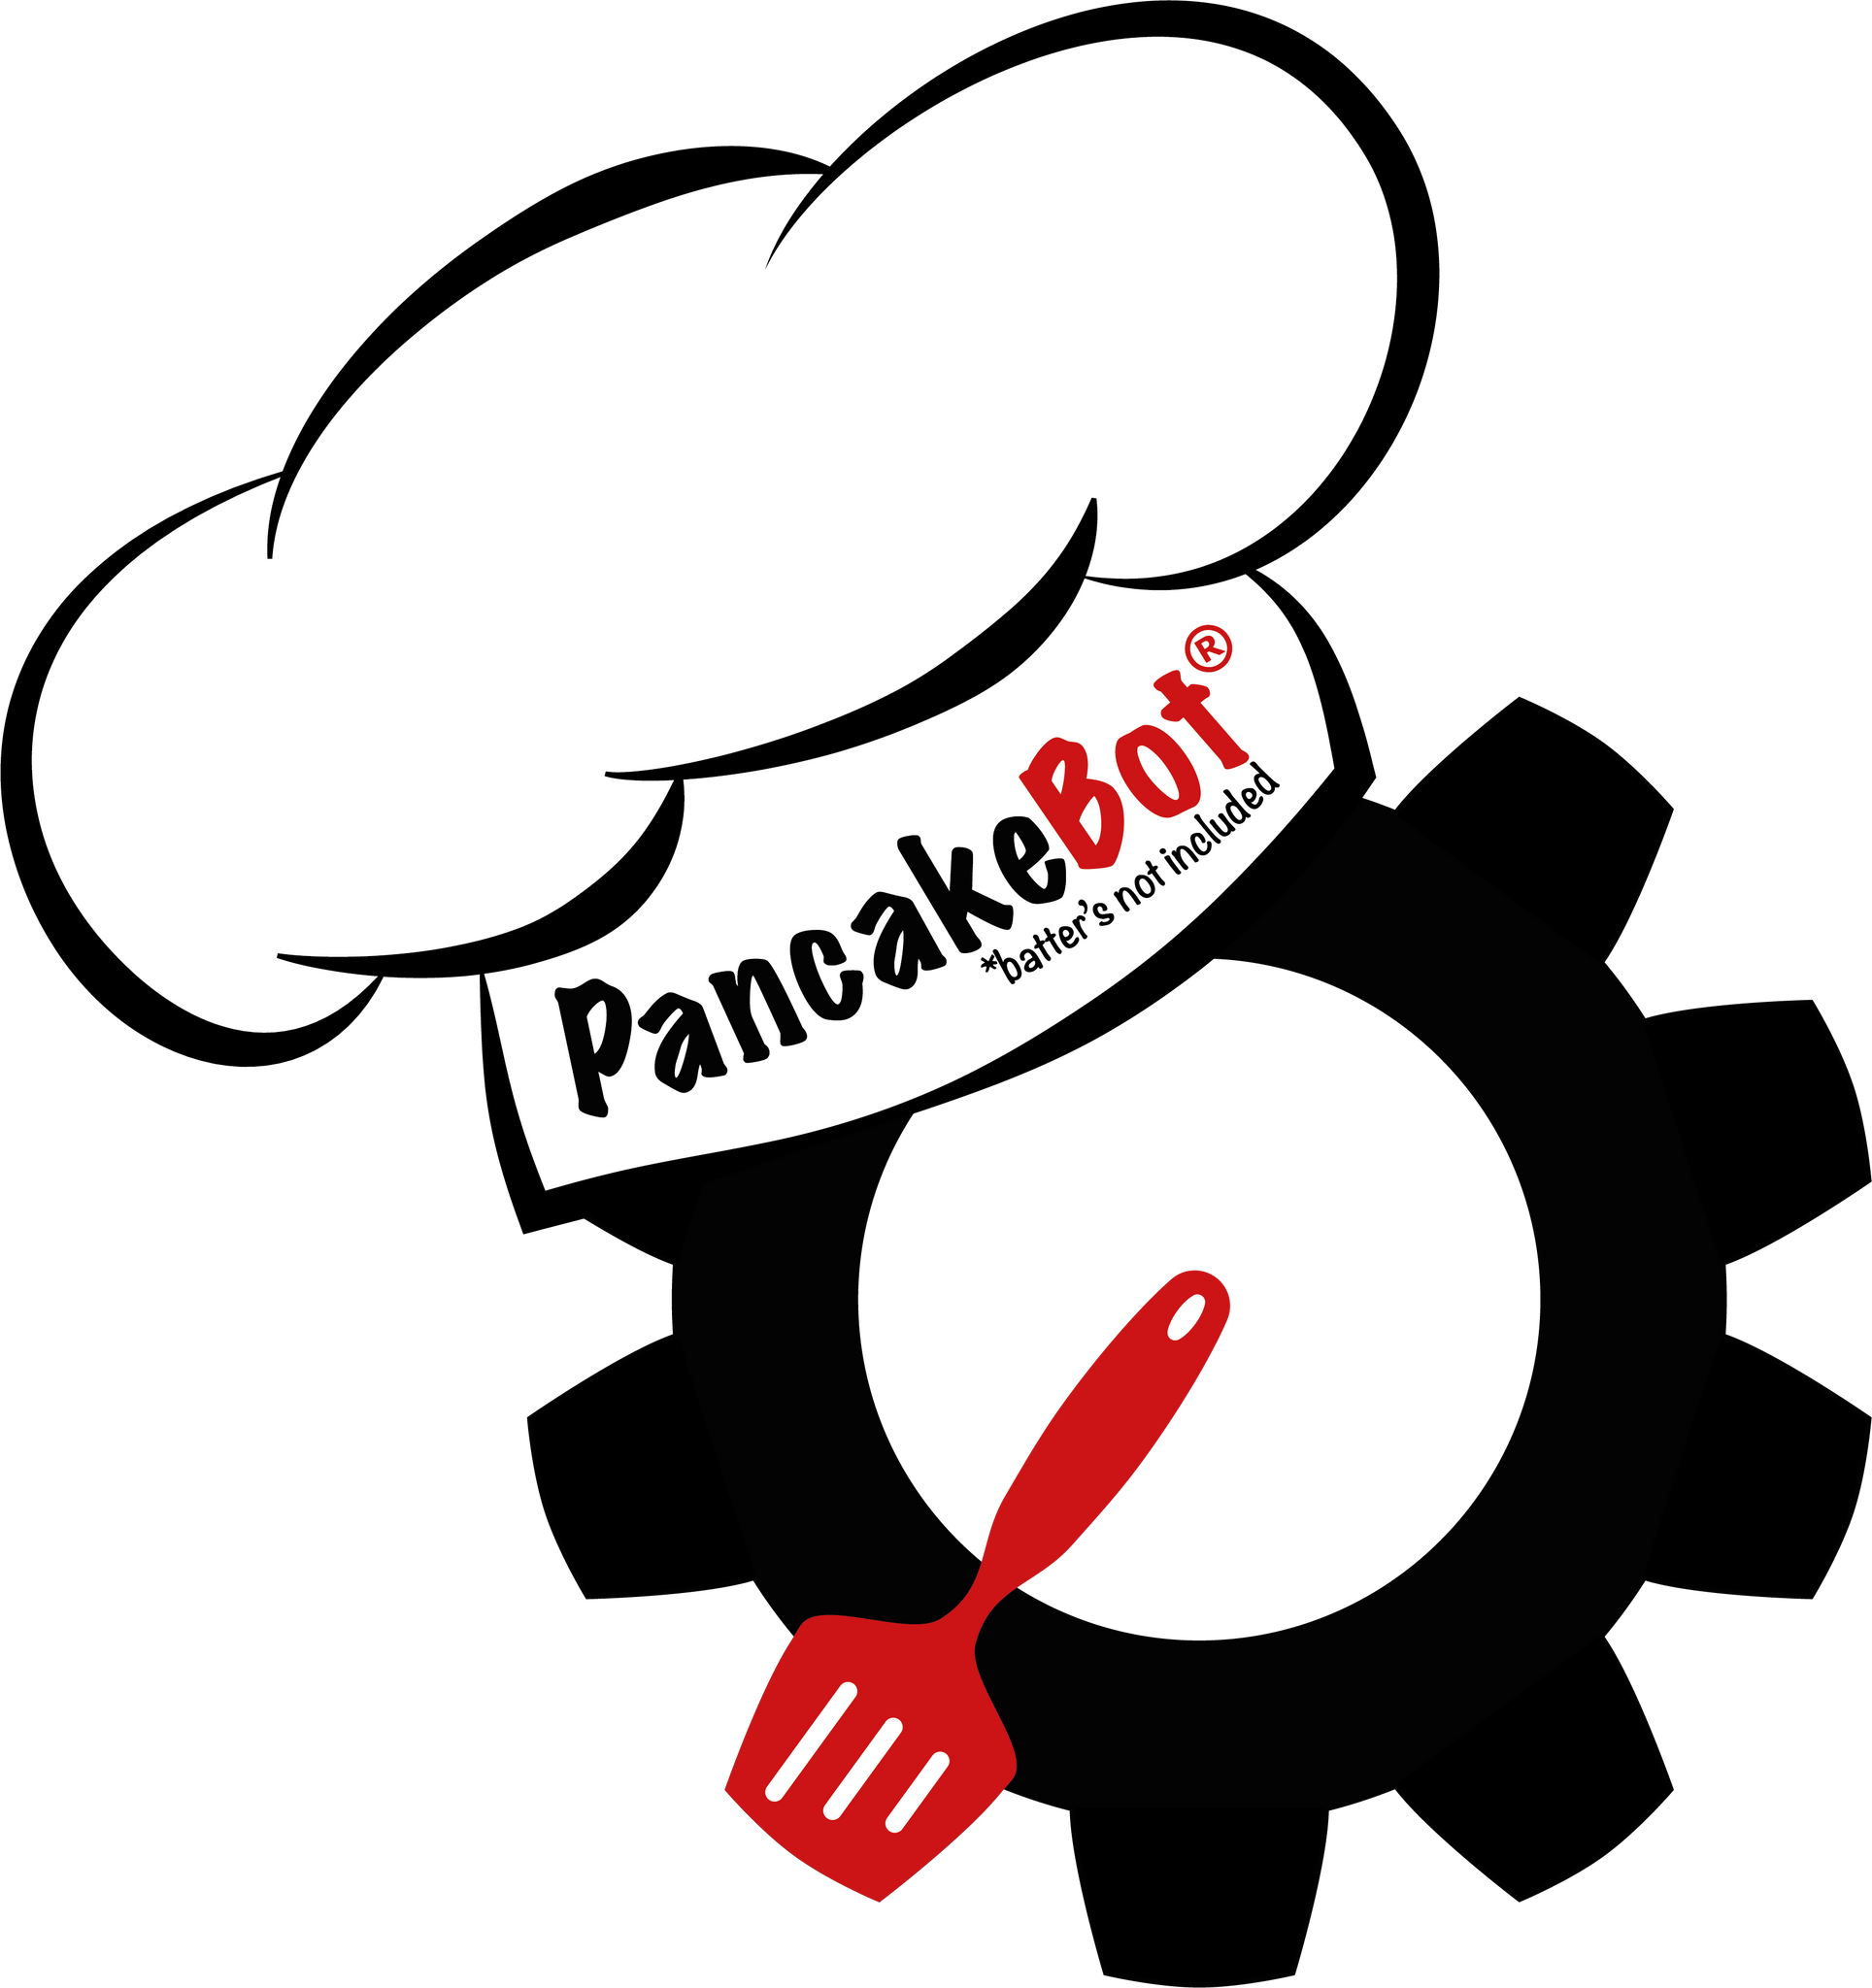 PancakeBot 2.0: Introducing Rise by Dash